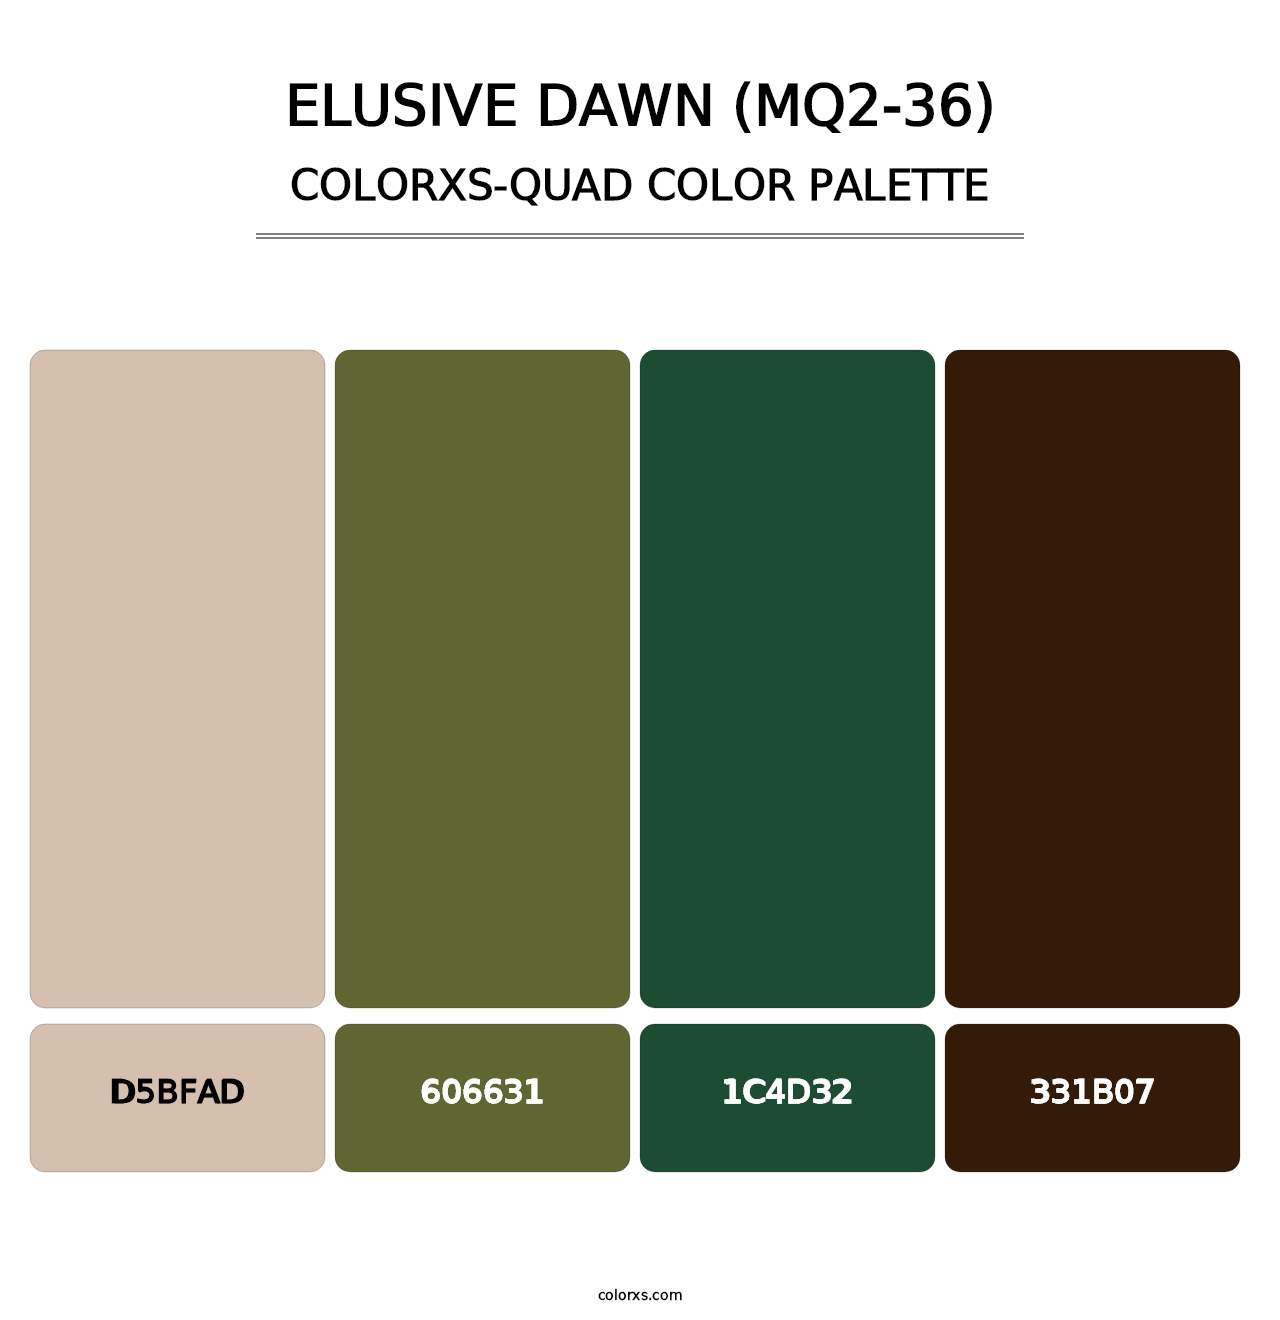 Elusive Dawn (MQ2-36) - Colorxs Quad Palette